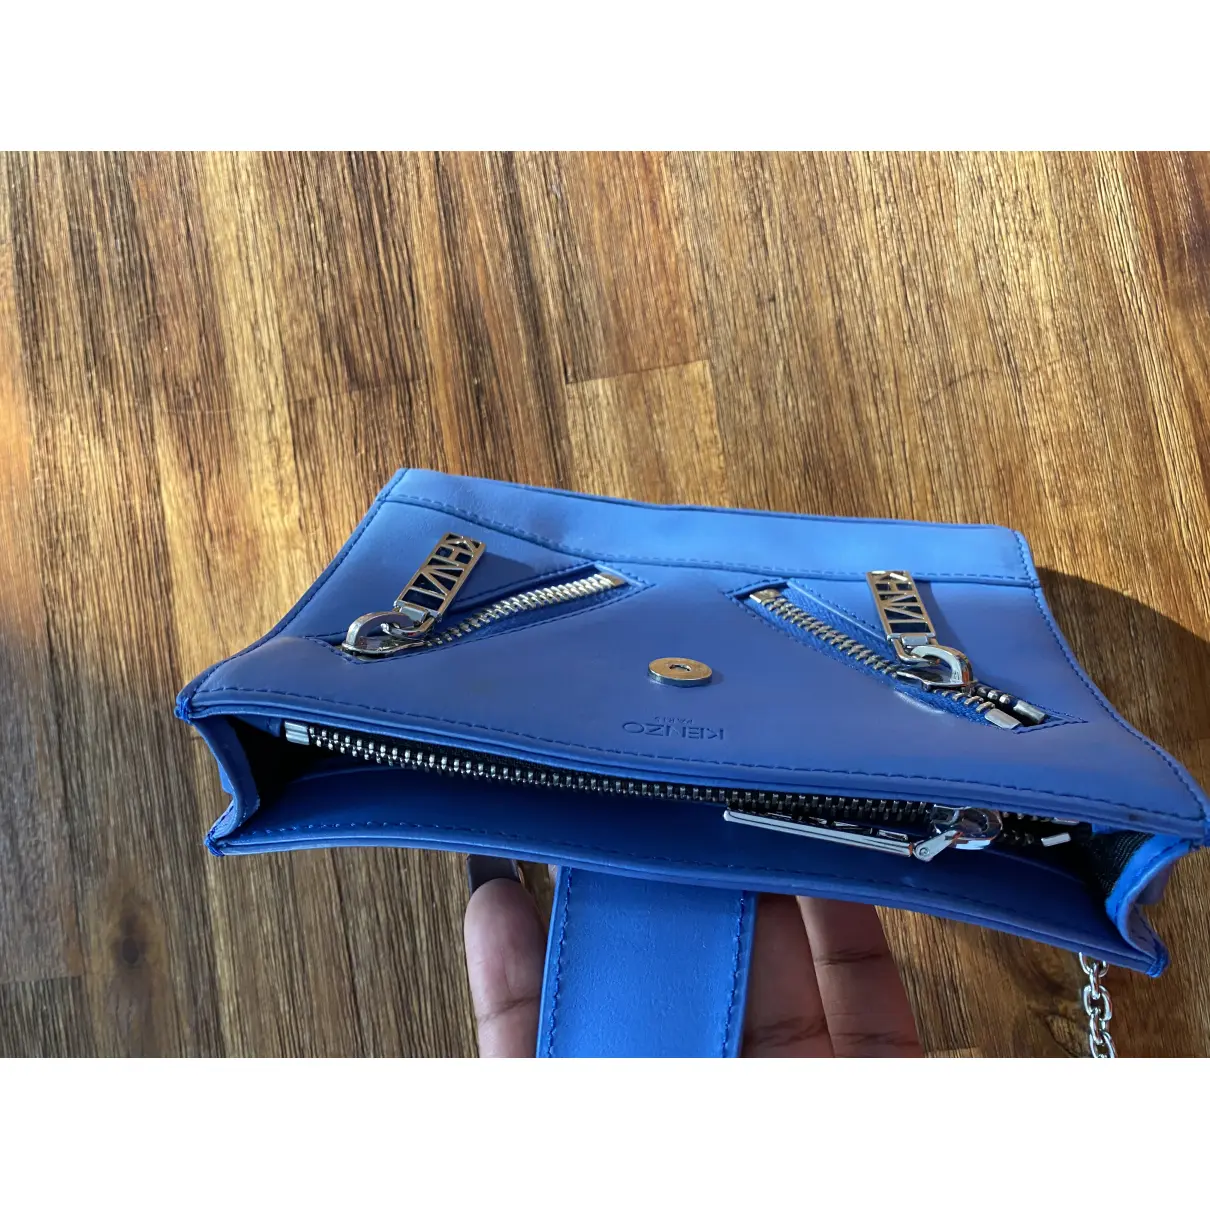 Buy Kenzo Leather handbag online